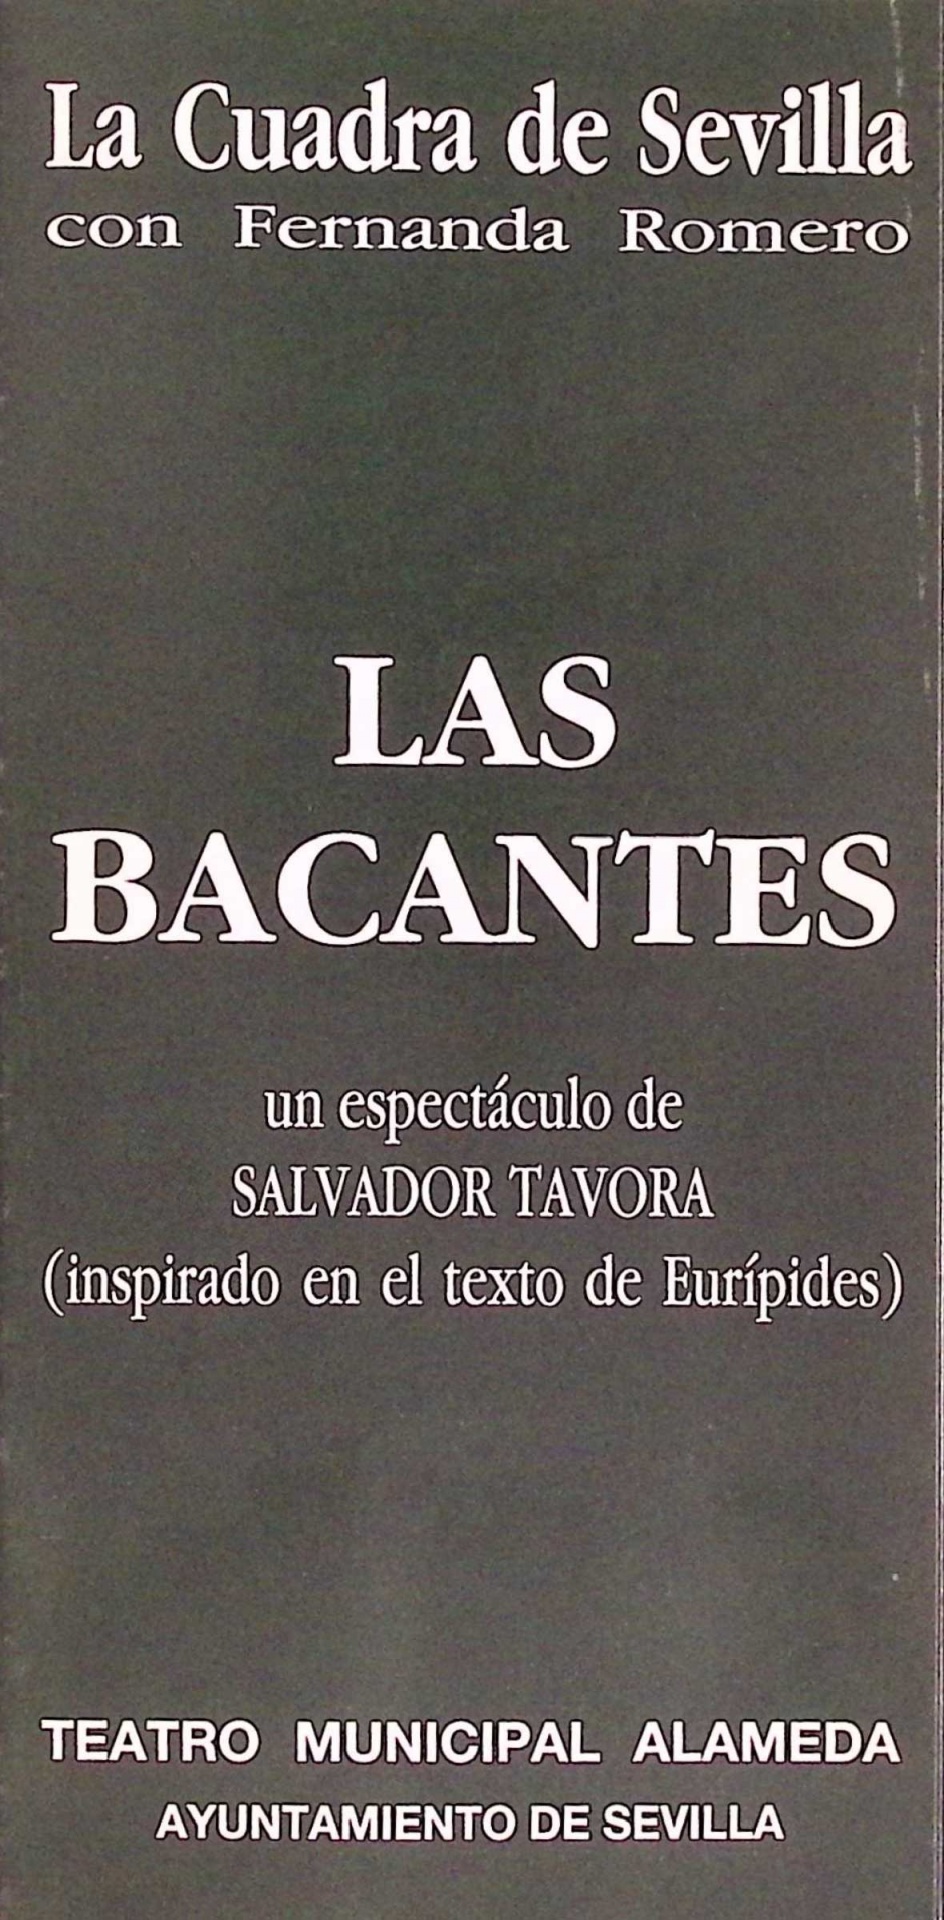 Las Bacantes un espectáculo de Salvador Távora (inspirado en el texto de Eurípides). La Cuadra con Fernanda Romero